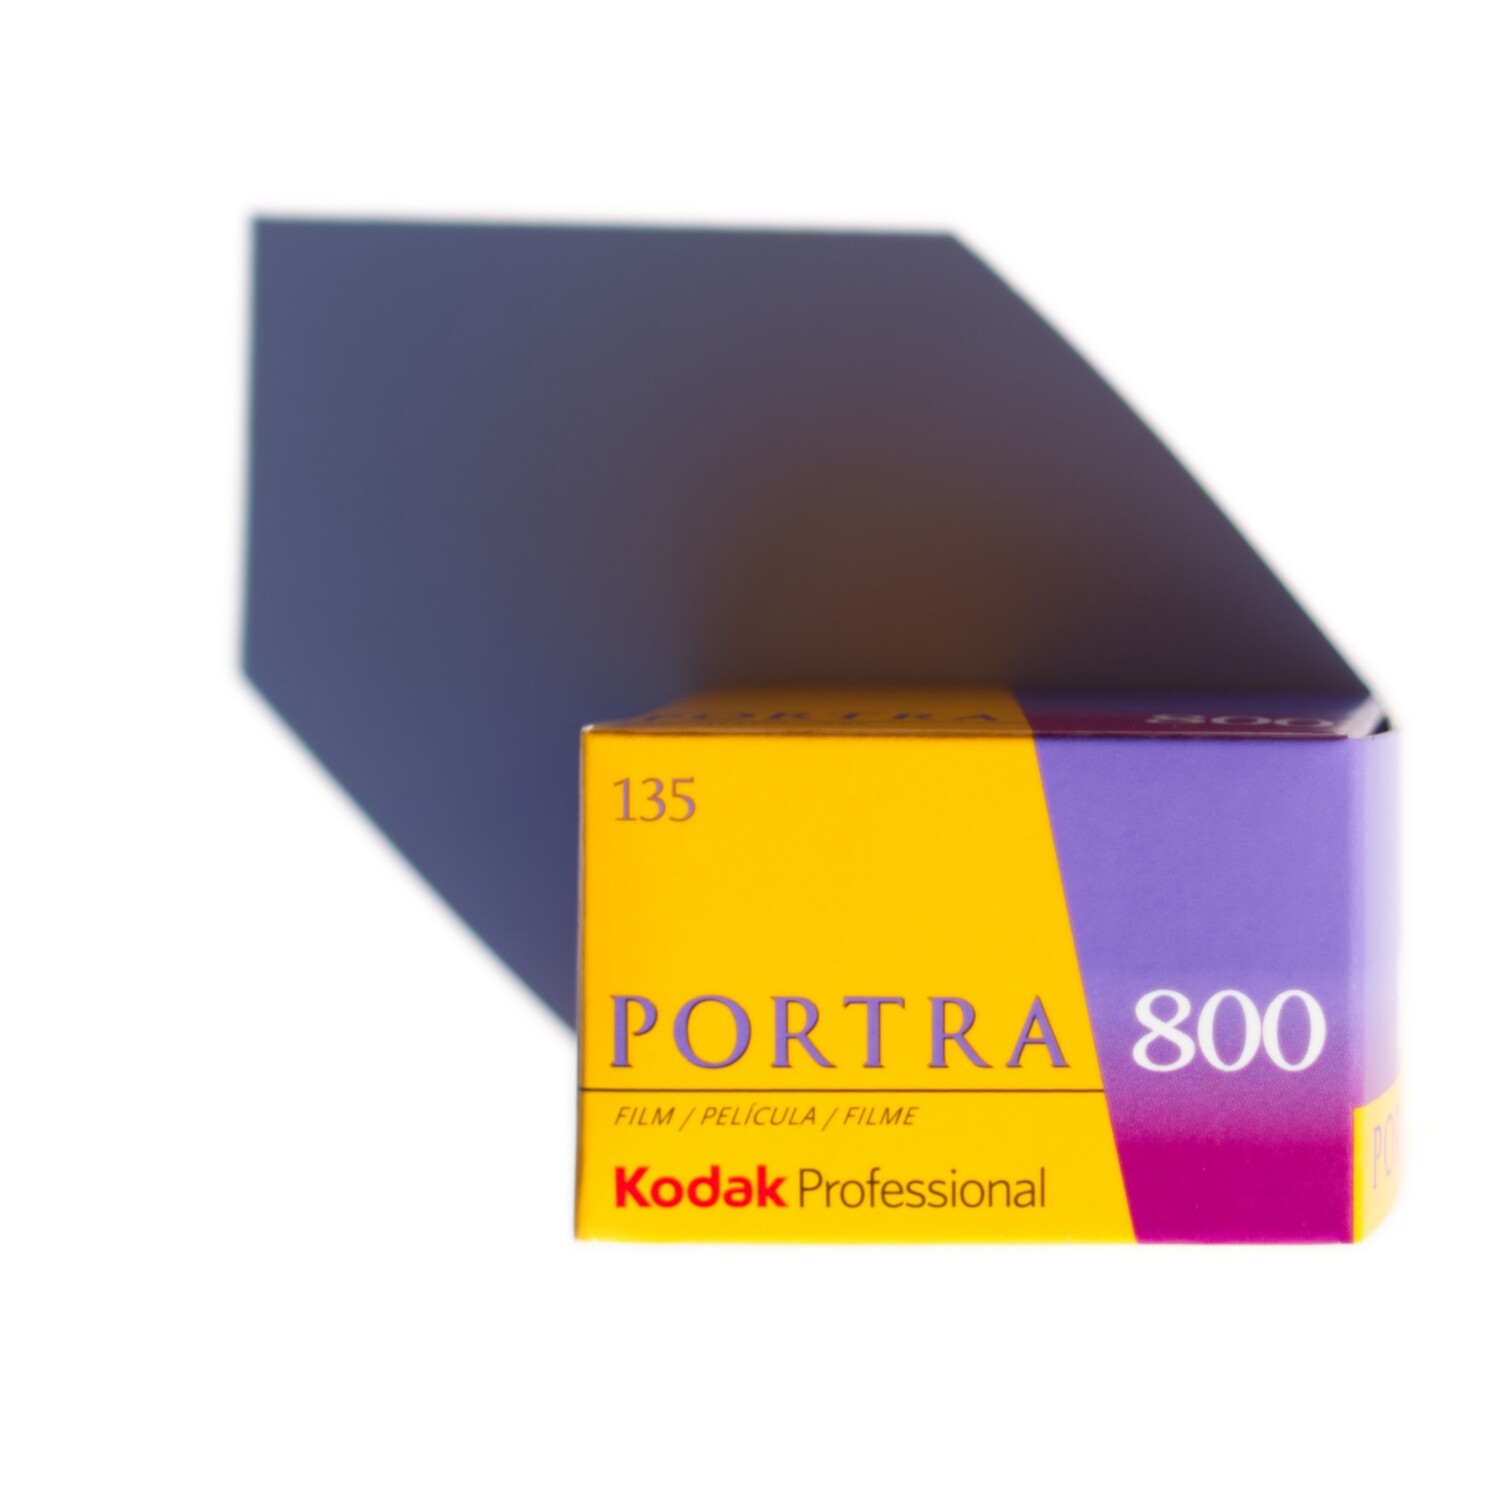 Kodak Professional Portra 800 35mm - Single Roll